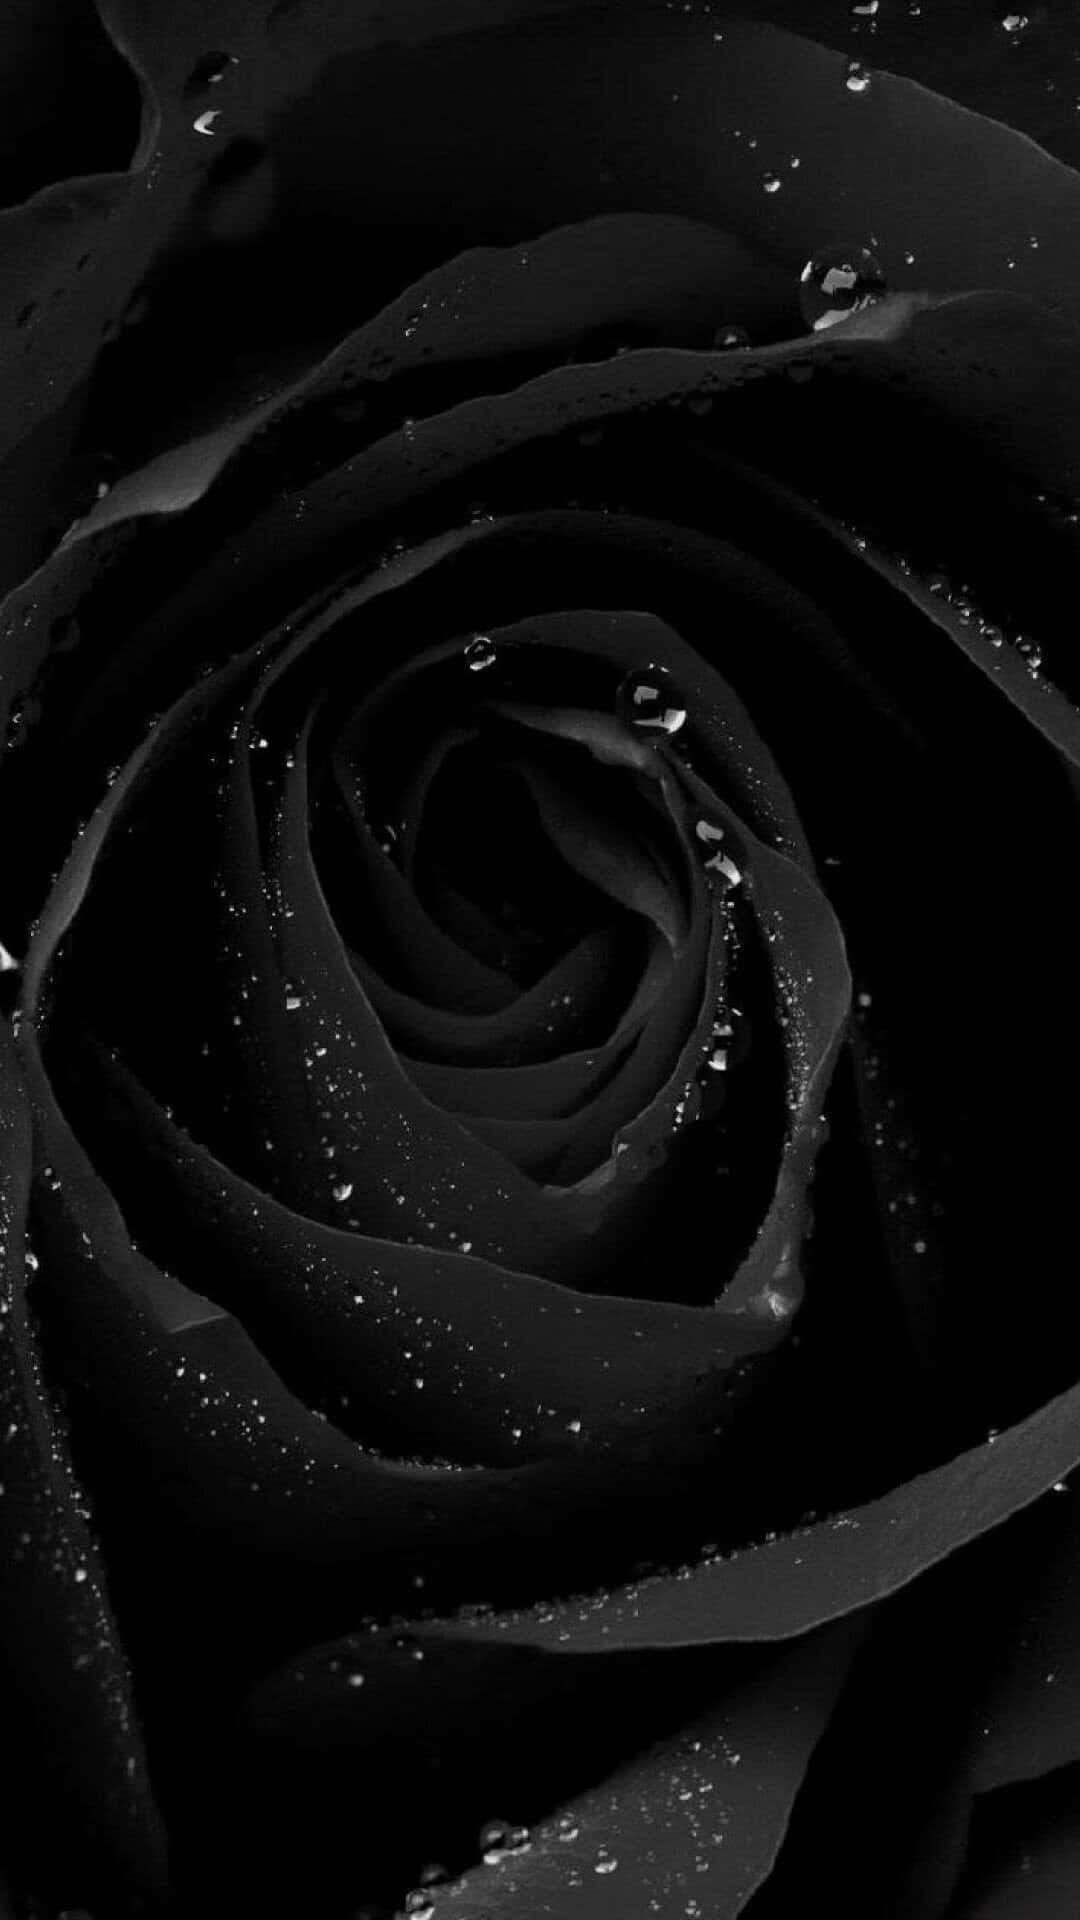 Black Rose Wallpaper Black Rose Wallpaper Black Rose Wallpaper Black Rose Wallpaper Black Rose Wallpaper Black Rose Wallpaper Black Rose Wallpaper Black Rose Wallpaper Black Rose Wallpaper Black Rose Wallpaper Black Rose Wallpaper